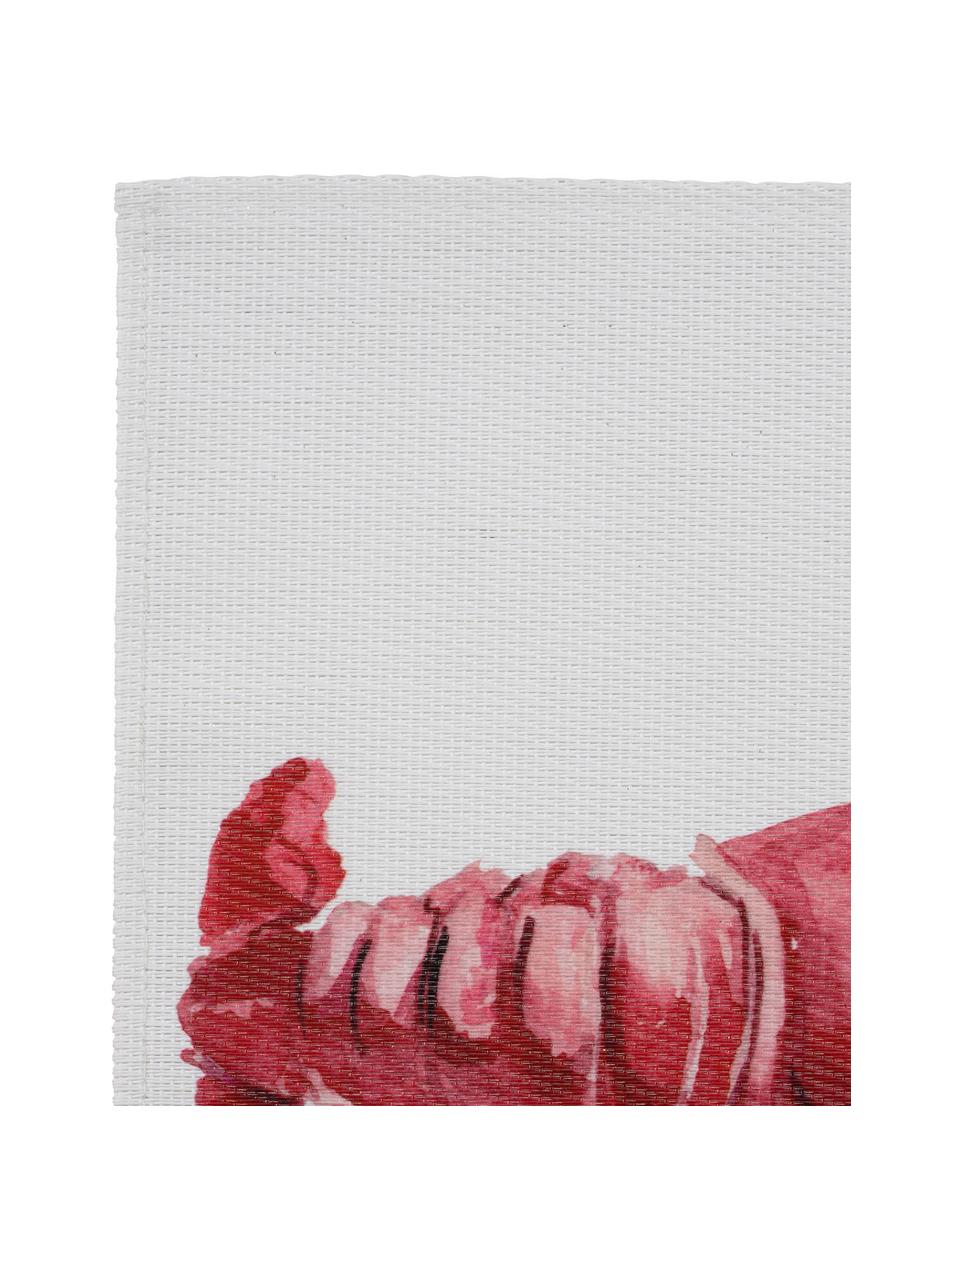 Tischset Ocean mit Hummermotiv, Polyester, Weiß, Rot, 30 x 45 cm